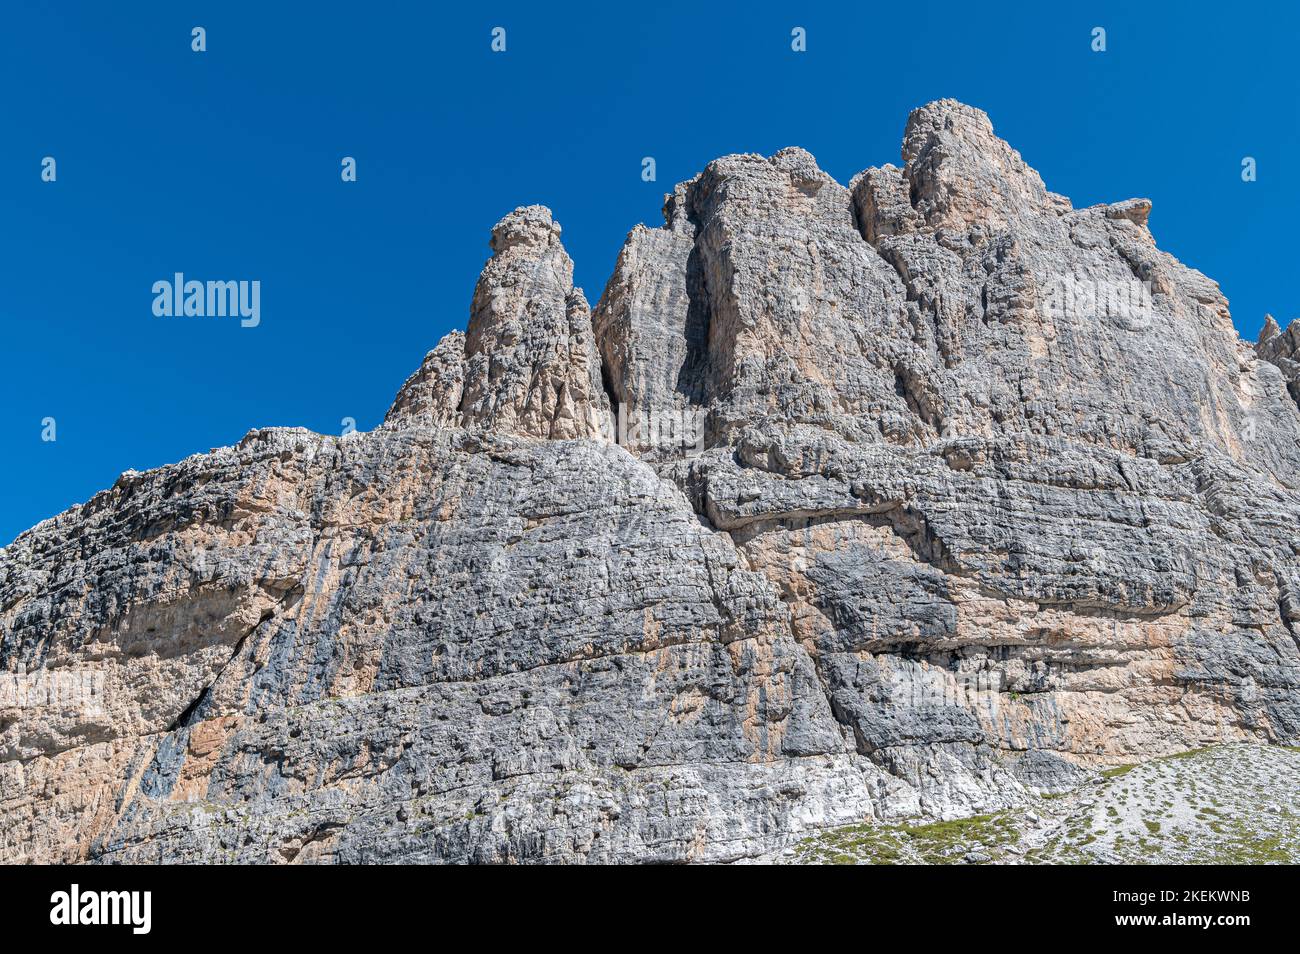 Mountain landscape in summer in Western Dolomites (Dolomiti di Brenta) - Vallesinella - Madonna di Campiglio, Trentino Alto Adige, northern Italy. Stock Photo